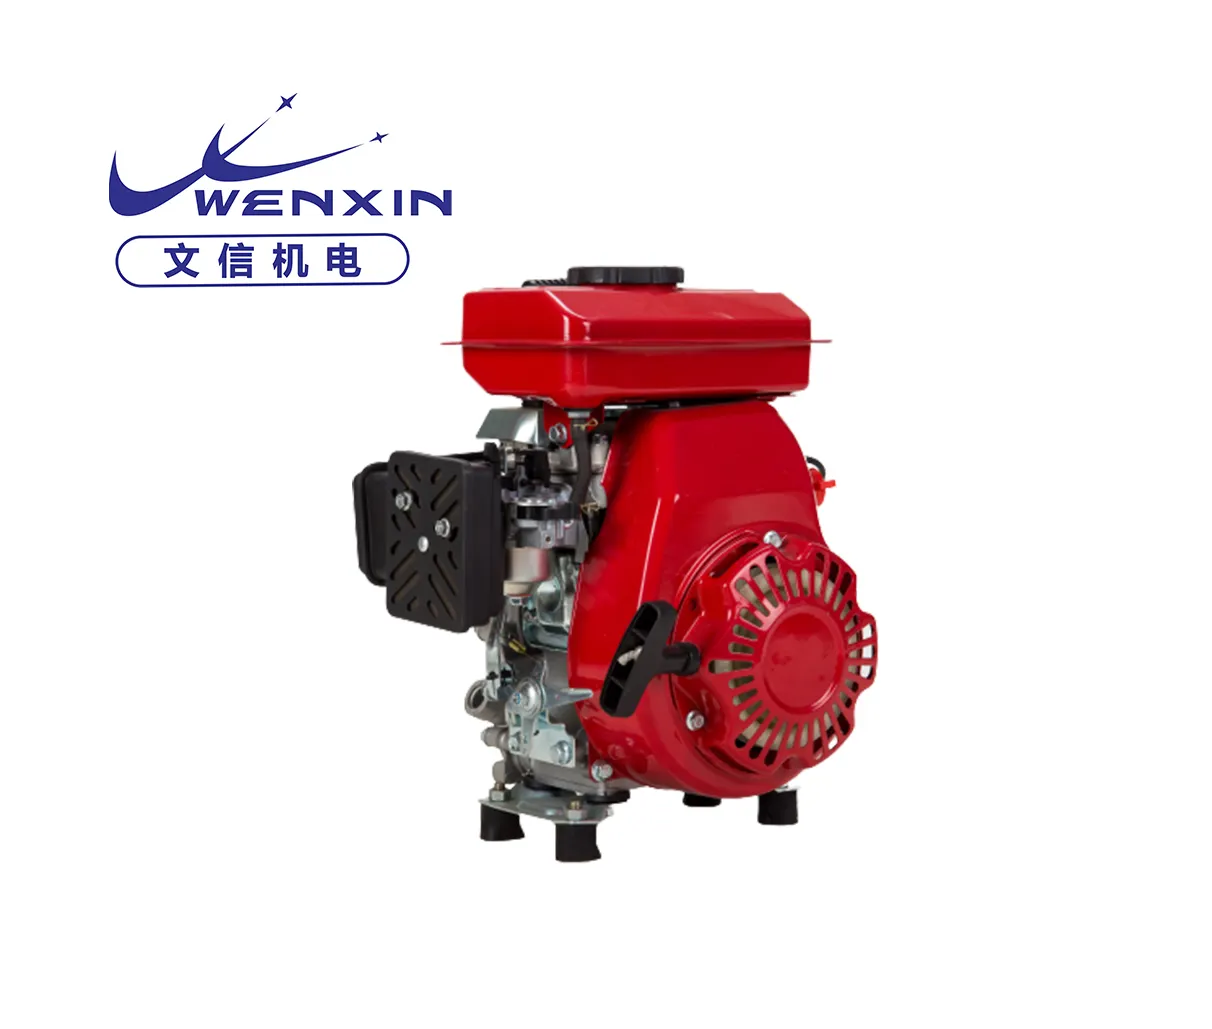 Wenxin 154f бензиновый двигатель, мини бензиновый двигатель, модель ohv, бензиновый 4-тактный Малогабаритный двигатель